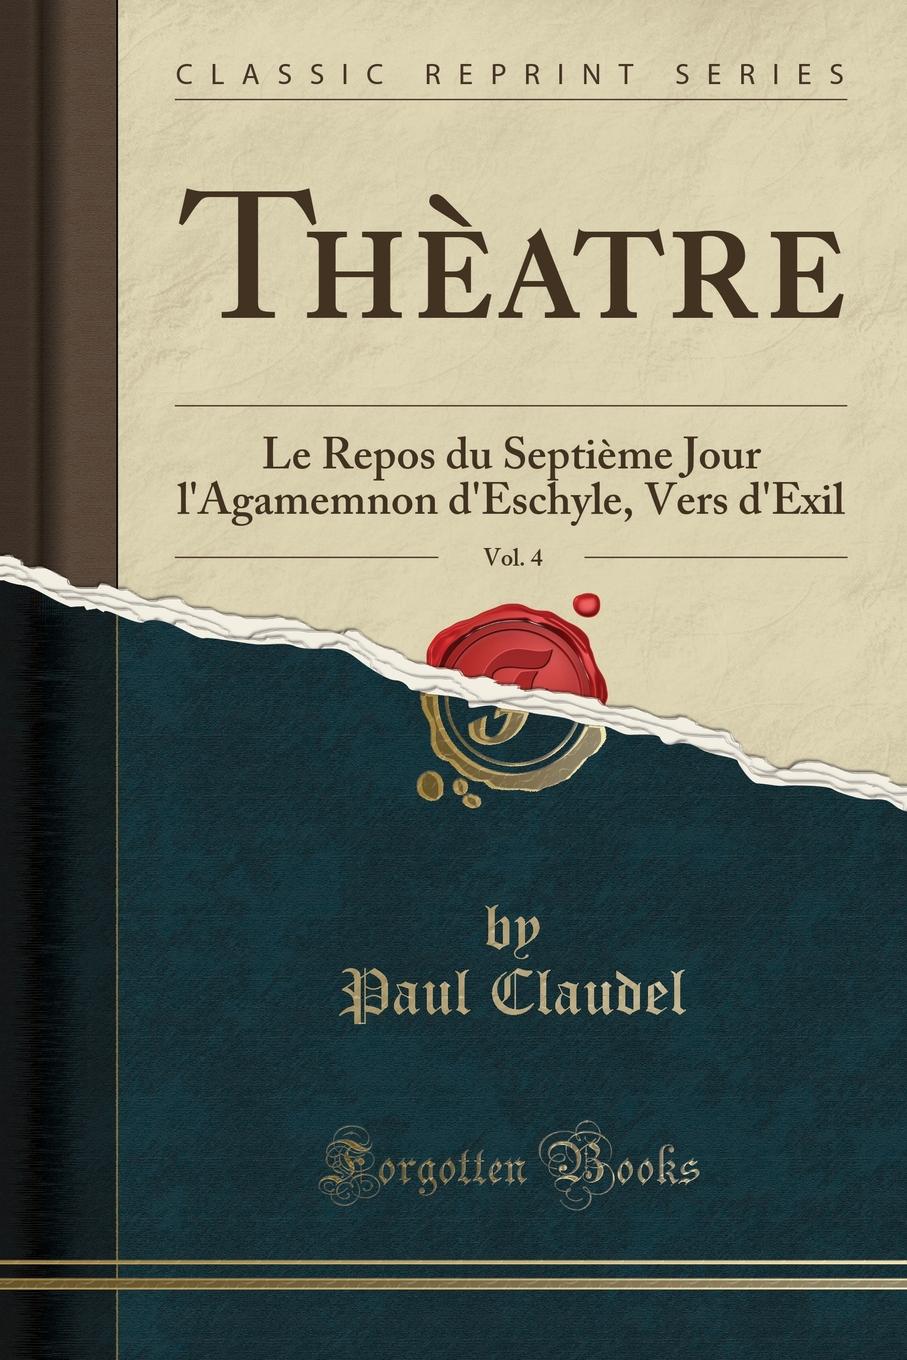 Theatre, Vol. 4. Le Repos du Septieme Jour l.Agamemnon d.Eschyle, Vers d.Exil (Classic Reprint)